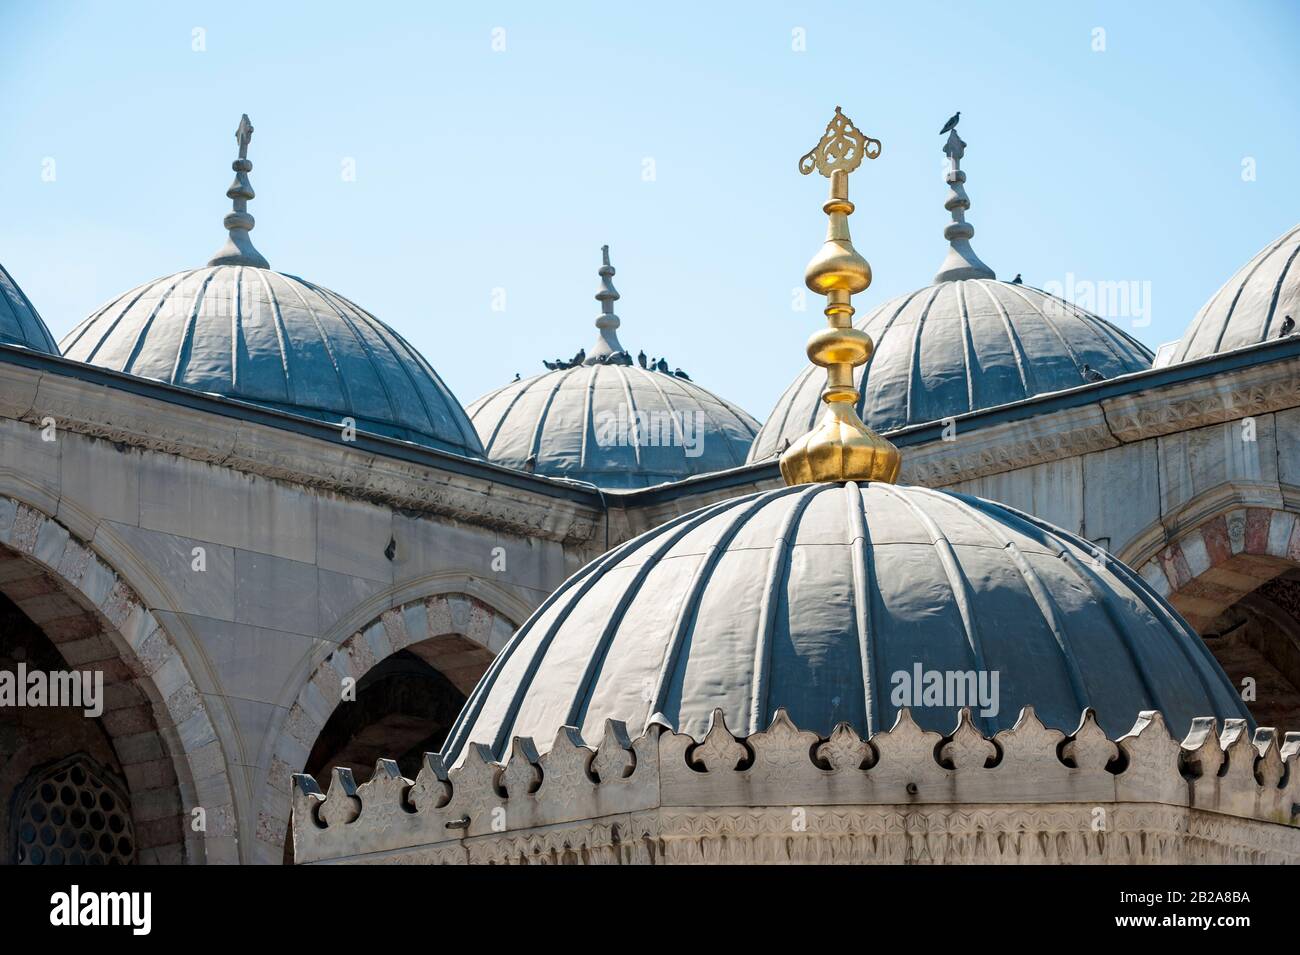 Dramatischer, sonnenbeleuchteter Blick auf die verwitterten Kuppeln einer Blauen Moschee unter hellblauem Himmel in Istanbul, Türkei Stockfoto